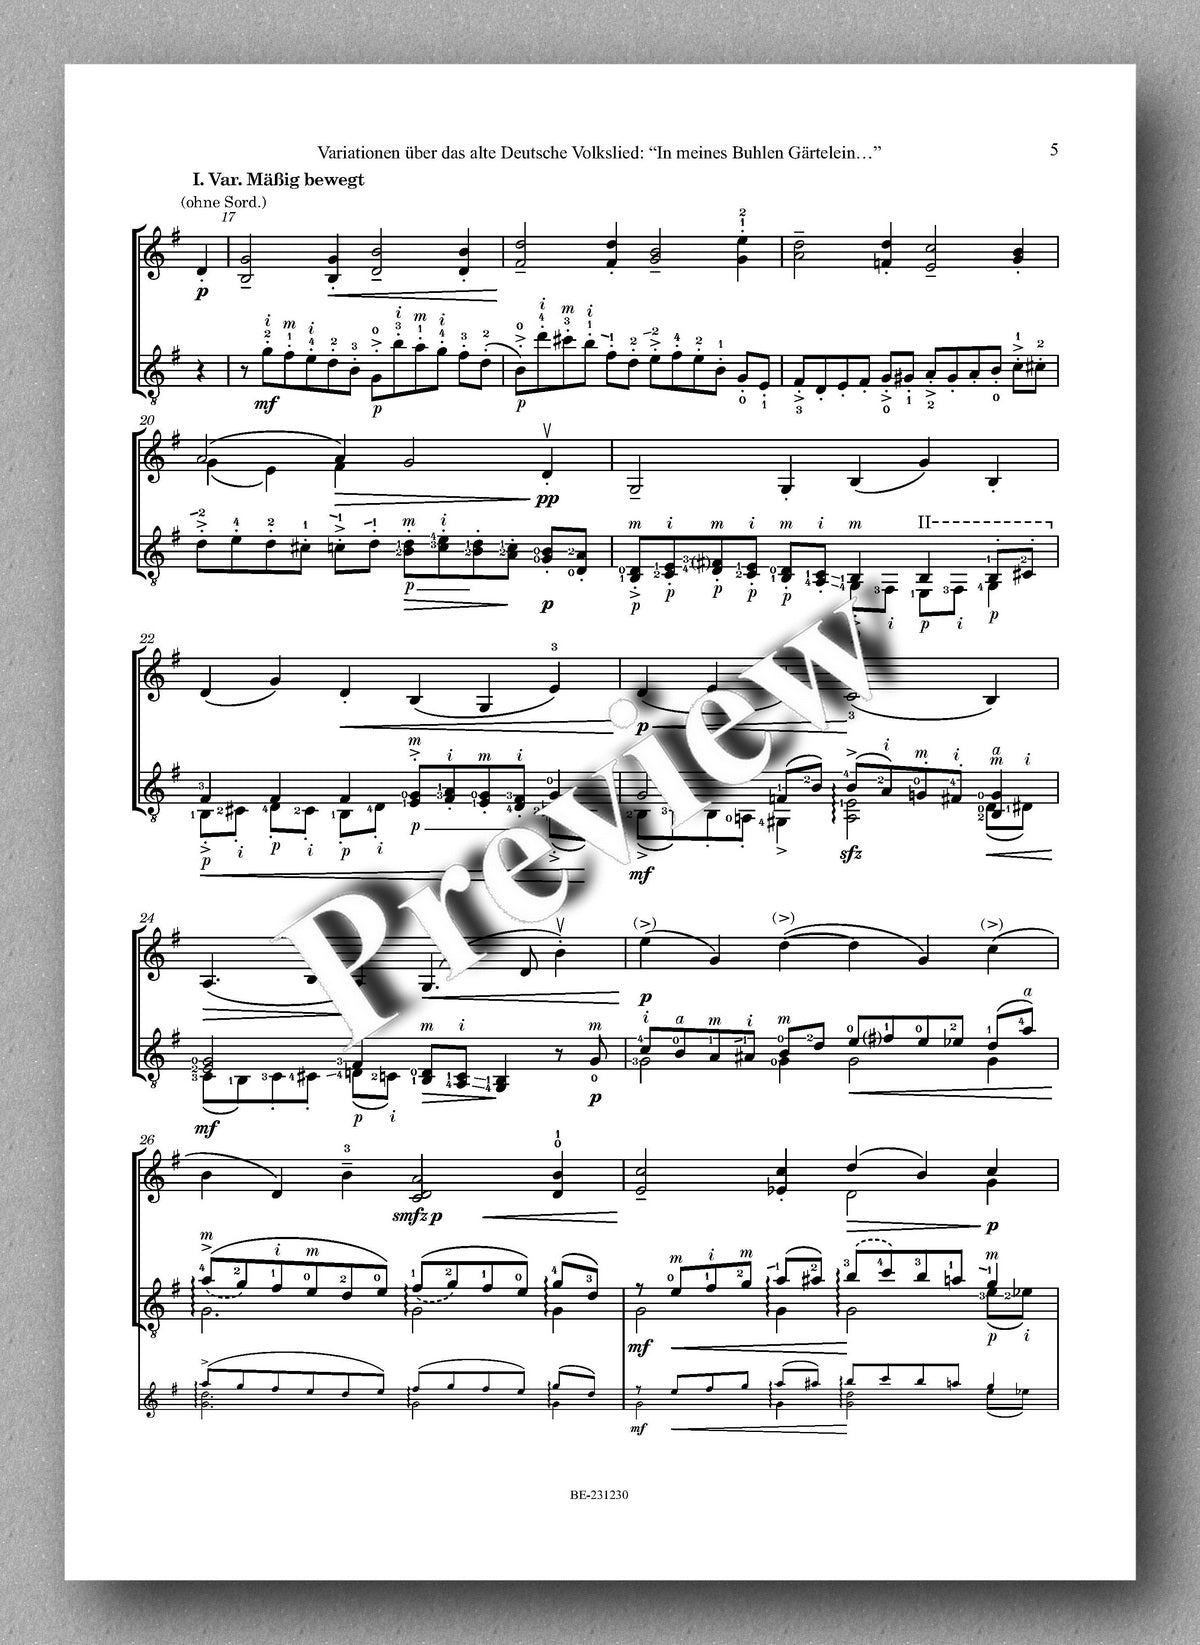 Ferdinand Rebay, Variationen über das alte Deutsche Volkslied: “In meines Buhlen Gärtelein…” - preview of the music score 2